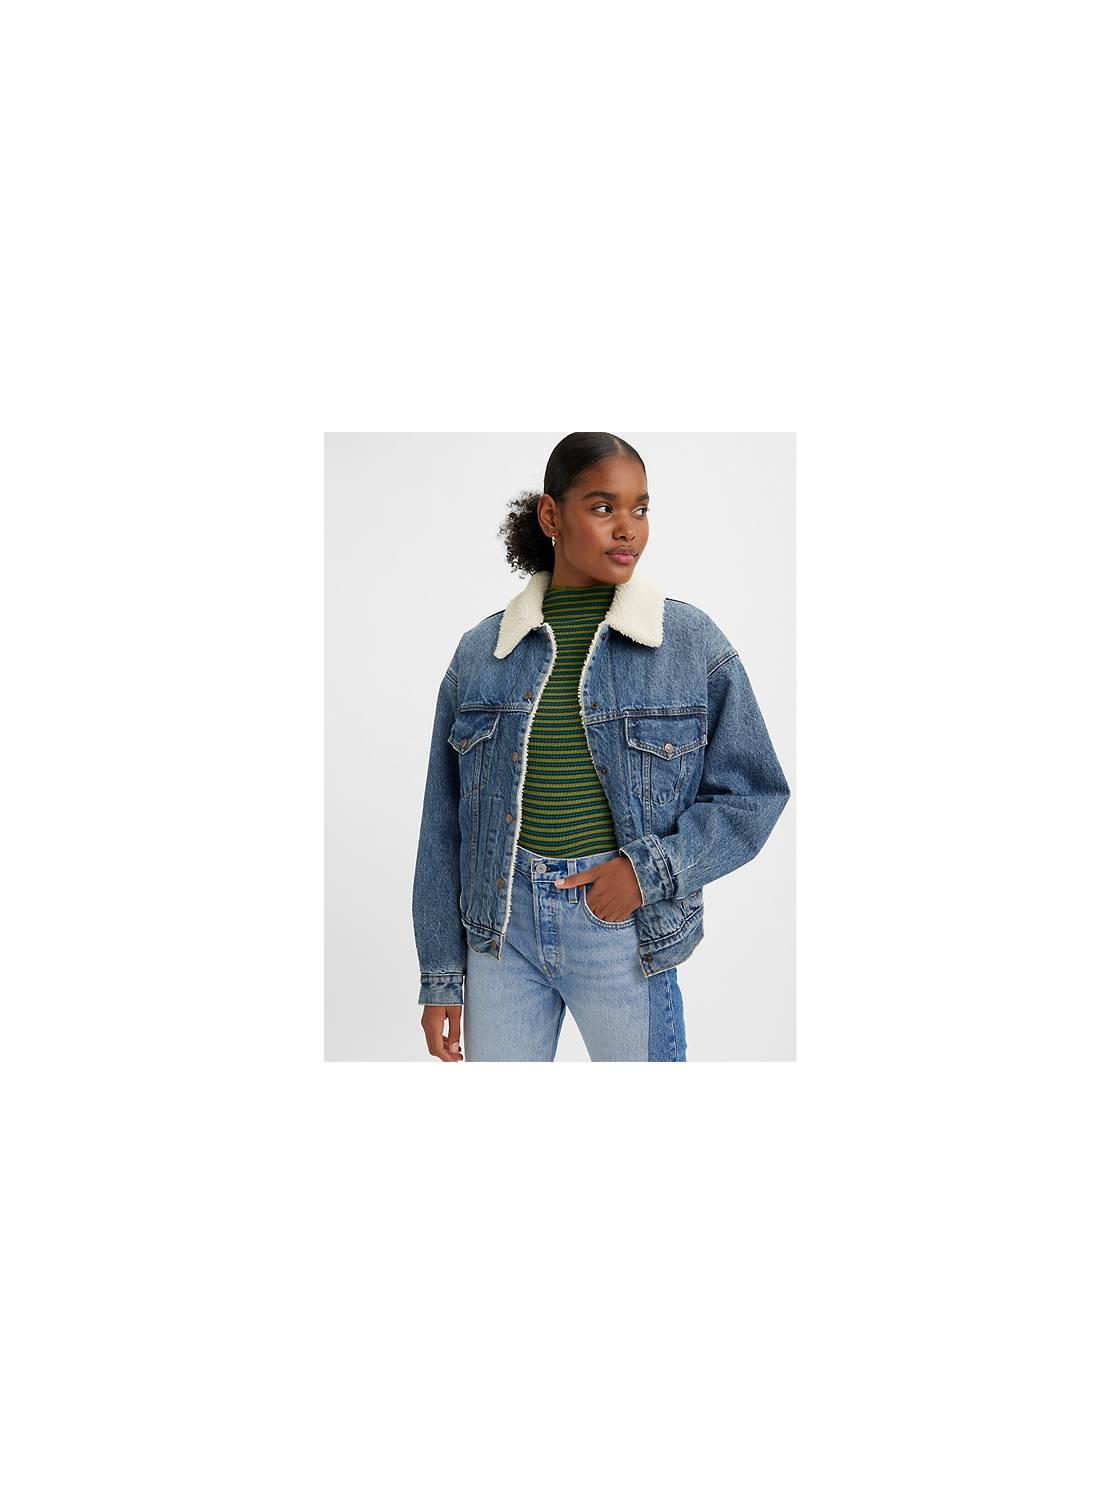 Jean Jackets - Shop Women's Denim Jackets & Outerwear